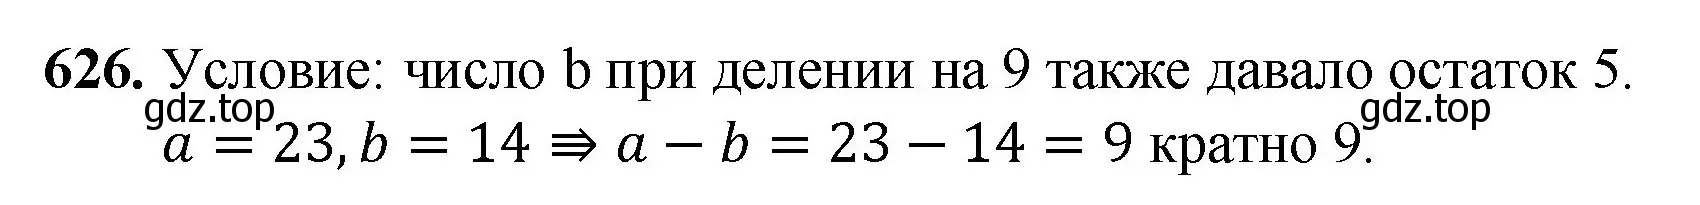 Решение номер 626 (страница 145) гдз по математике 5 класс Мерзляк, Полонский, учебник